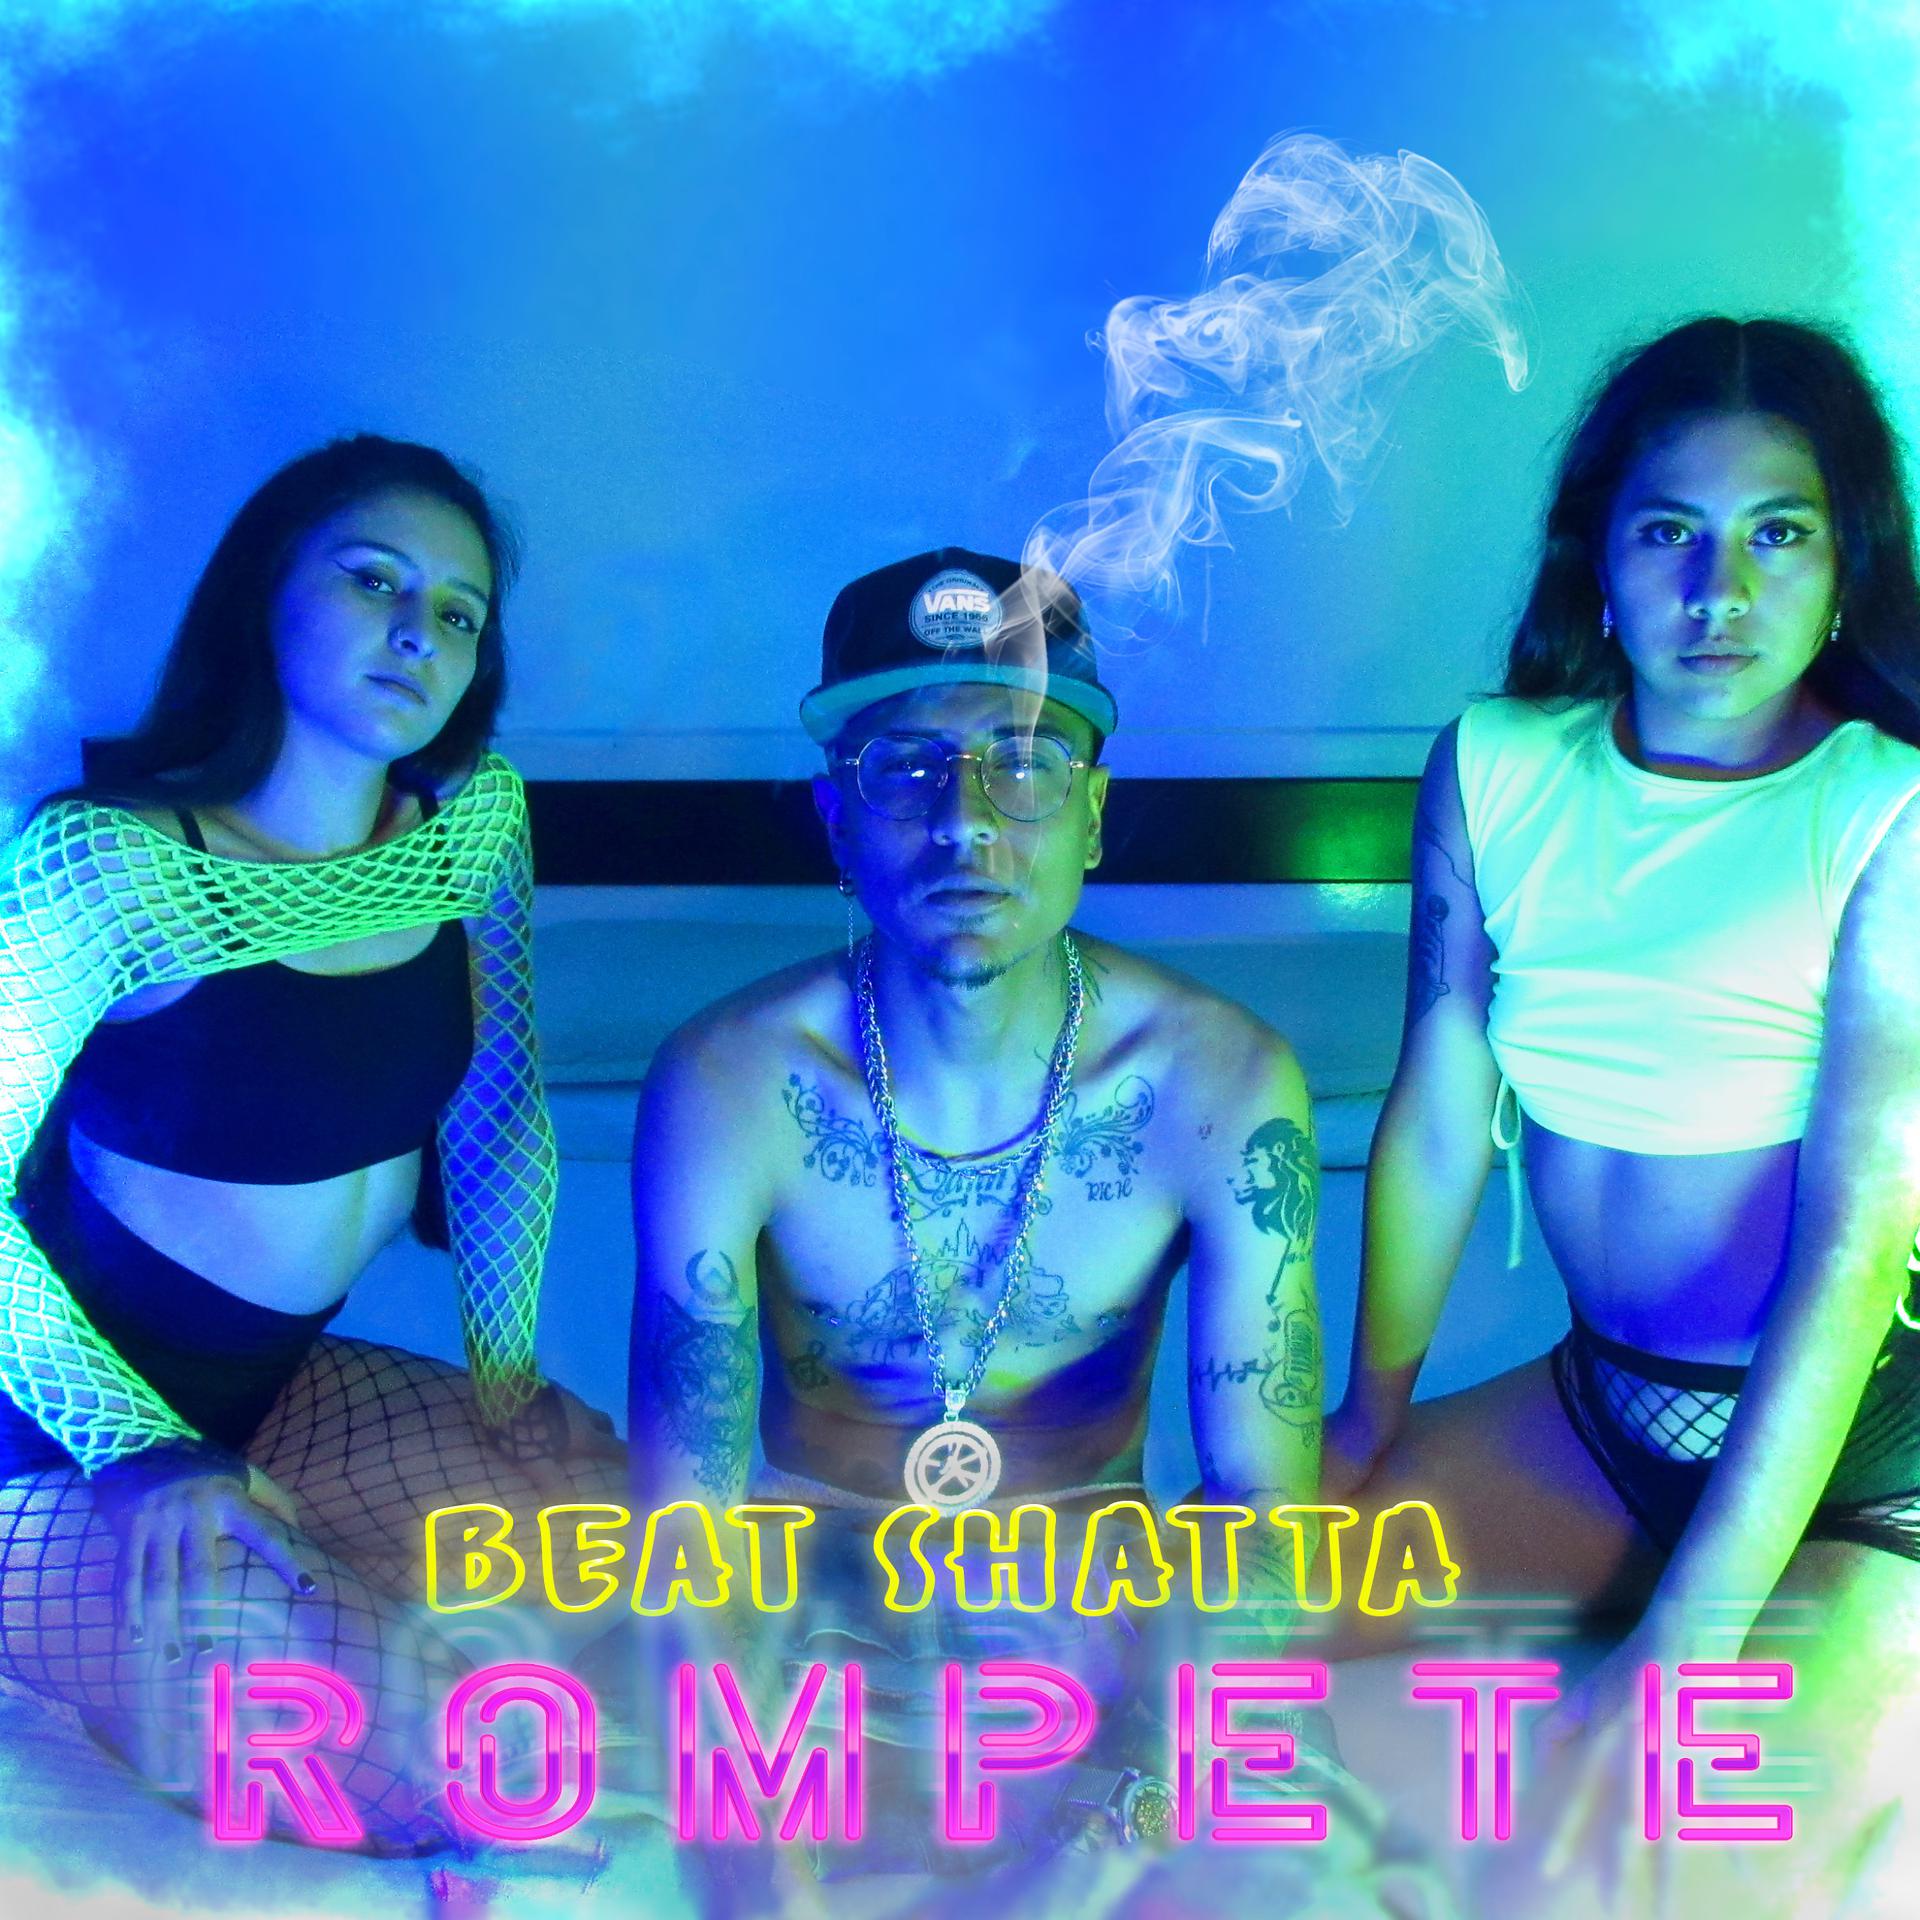 Постер альбома Rompete